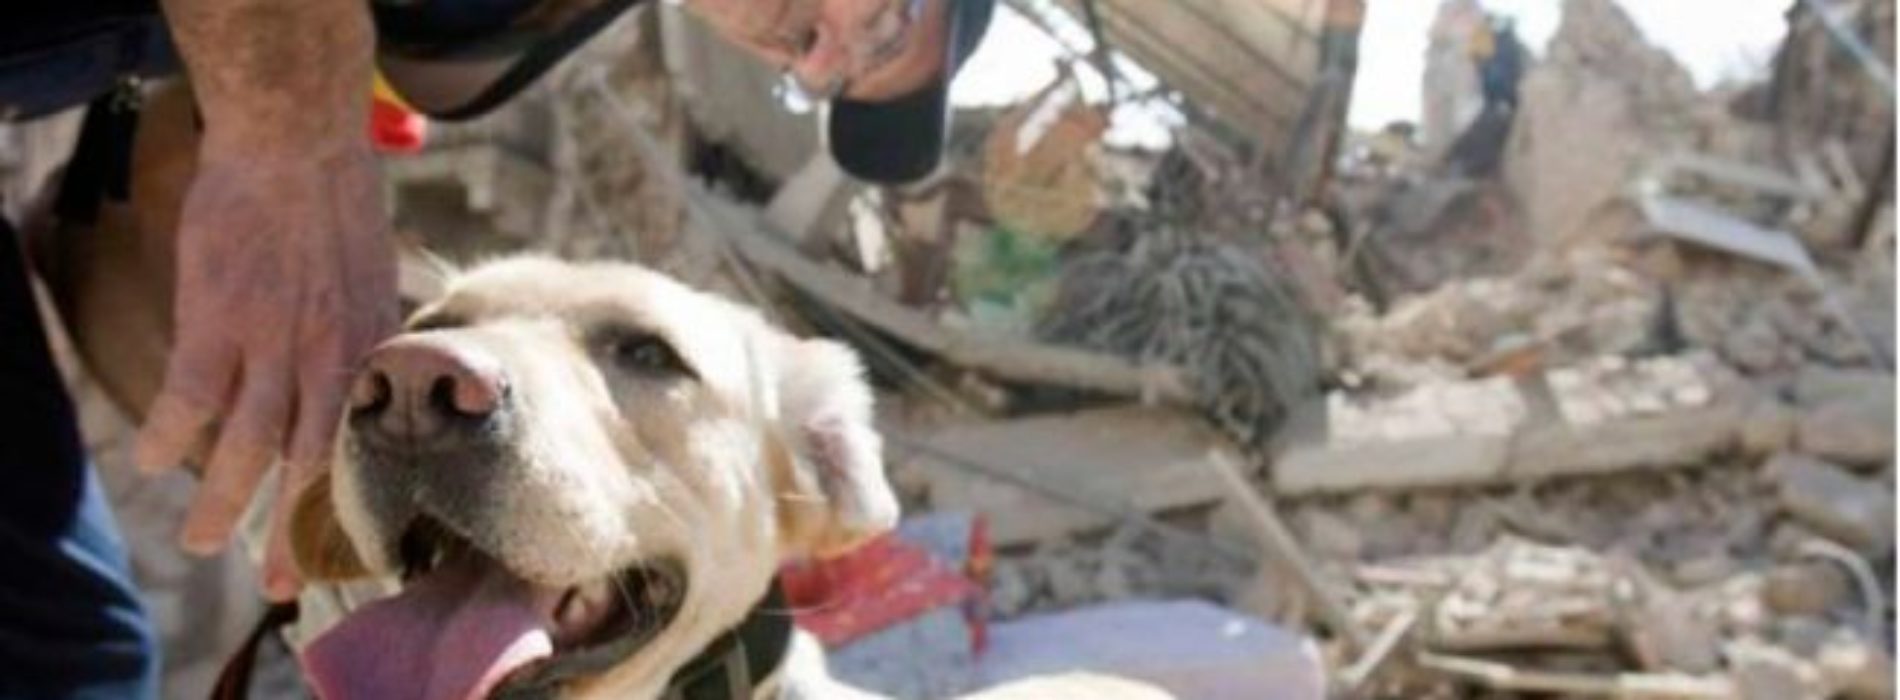 Reconocen a los 14 binomios caninos participantes en sismos
de Oaxaca